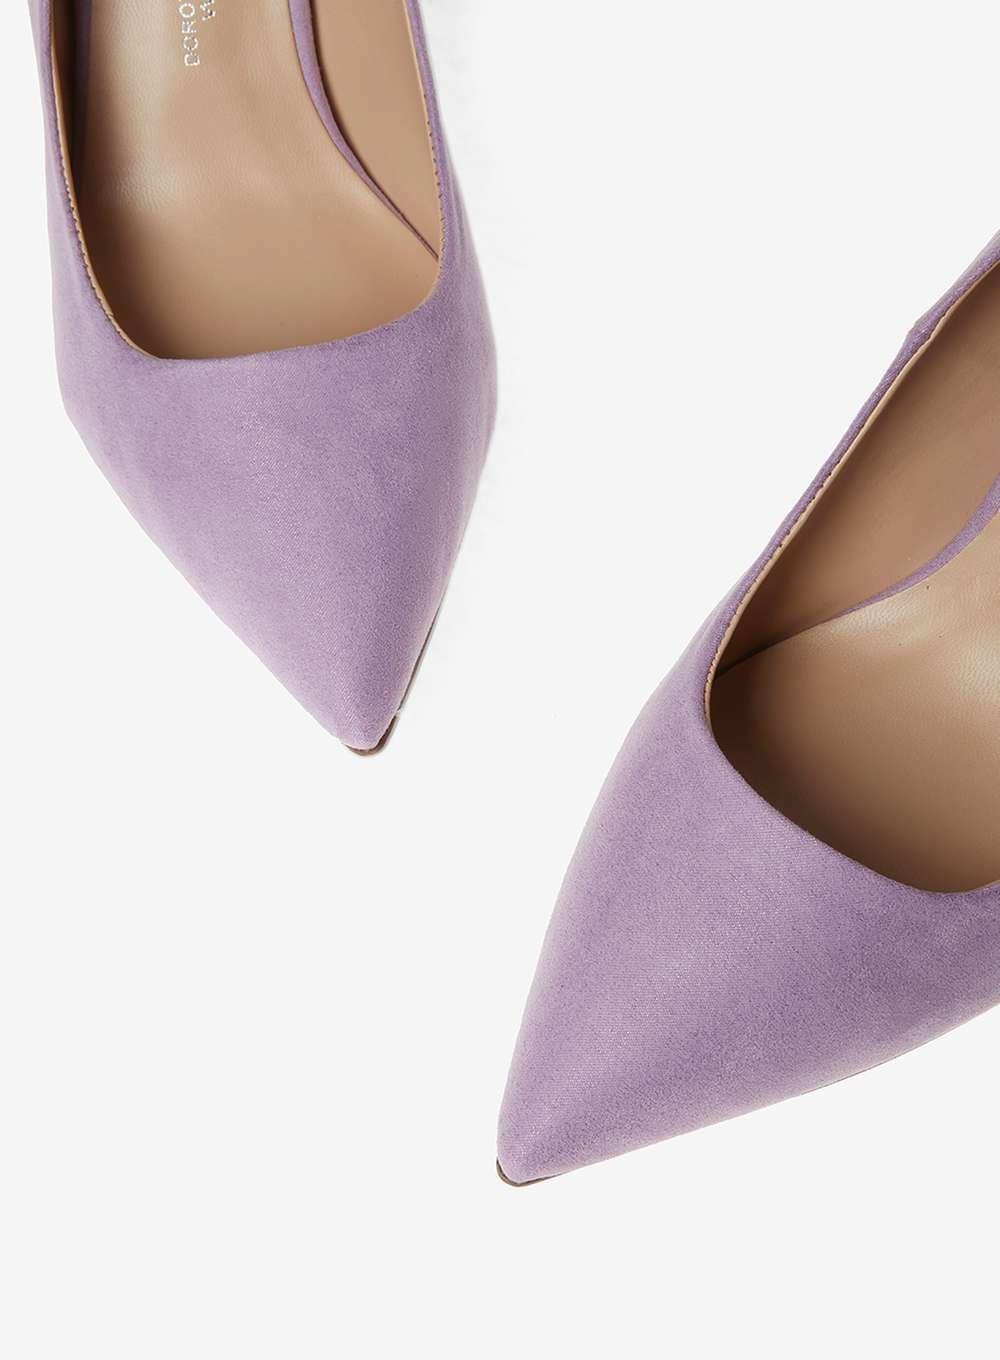 purple wide fit shoes